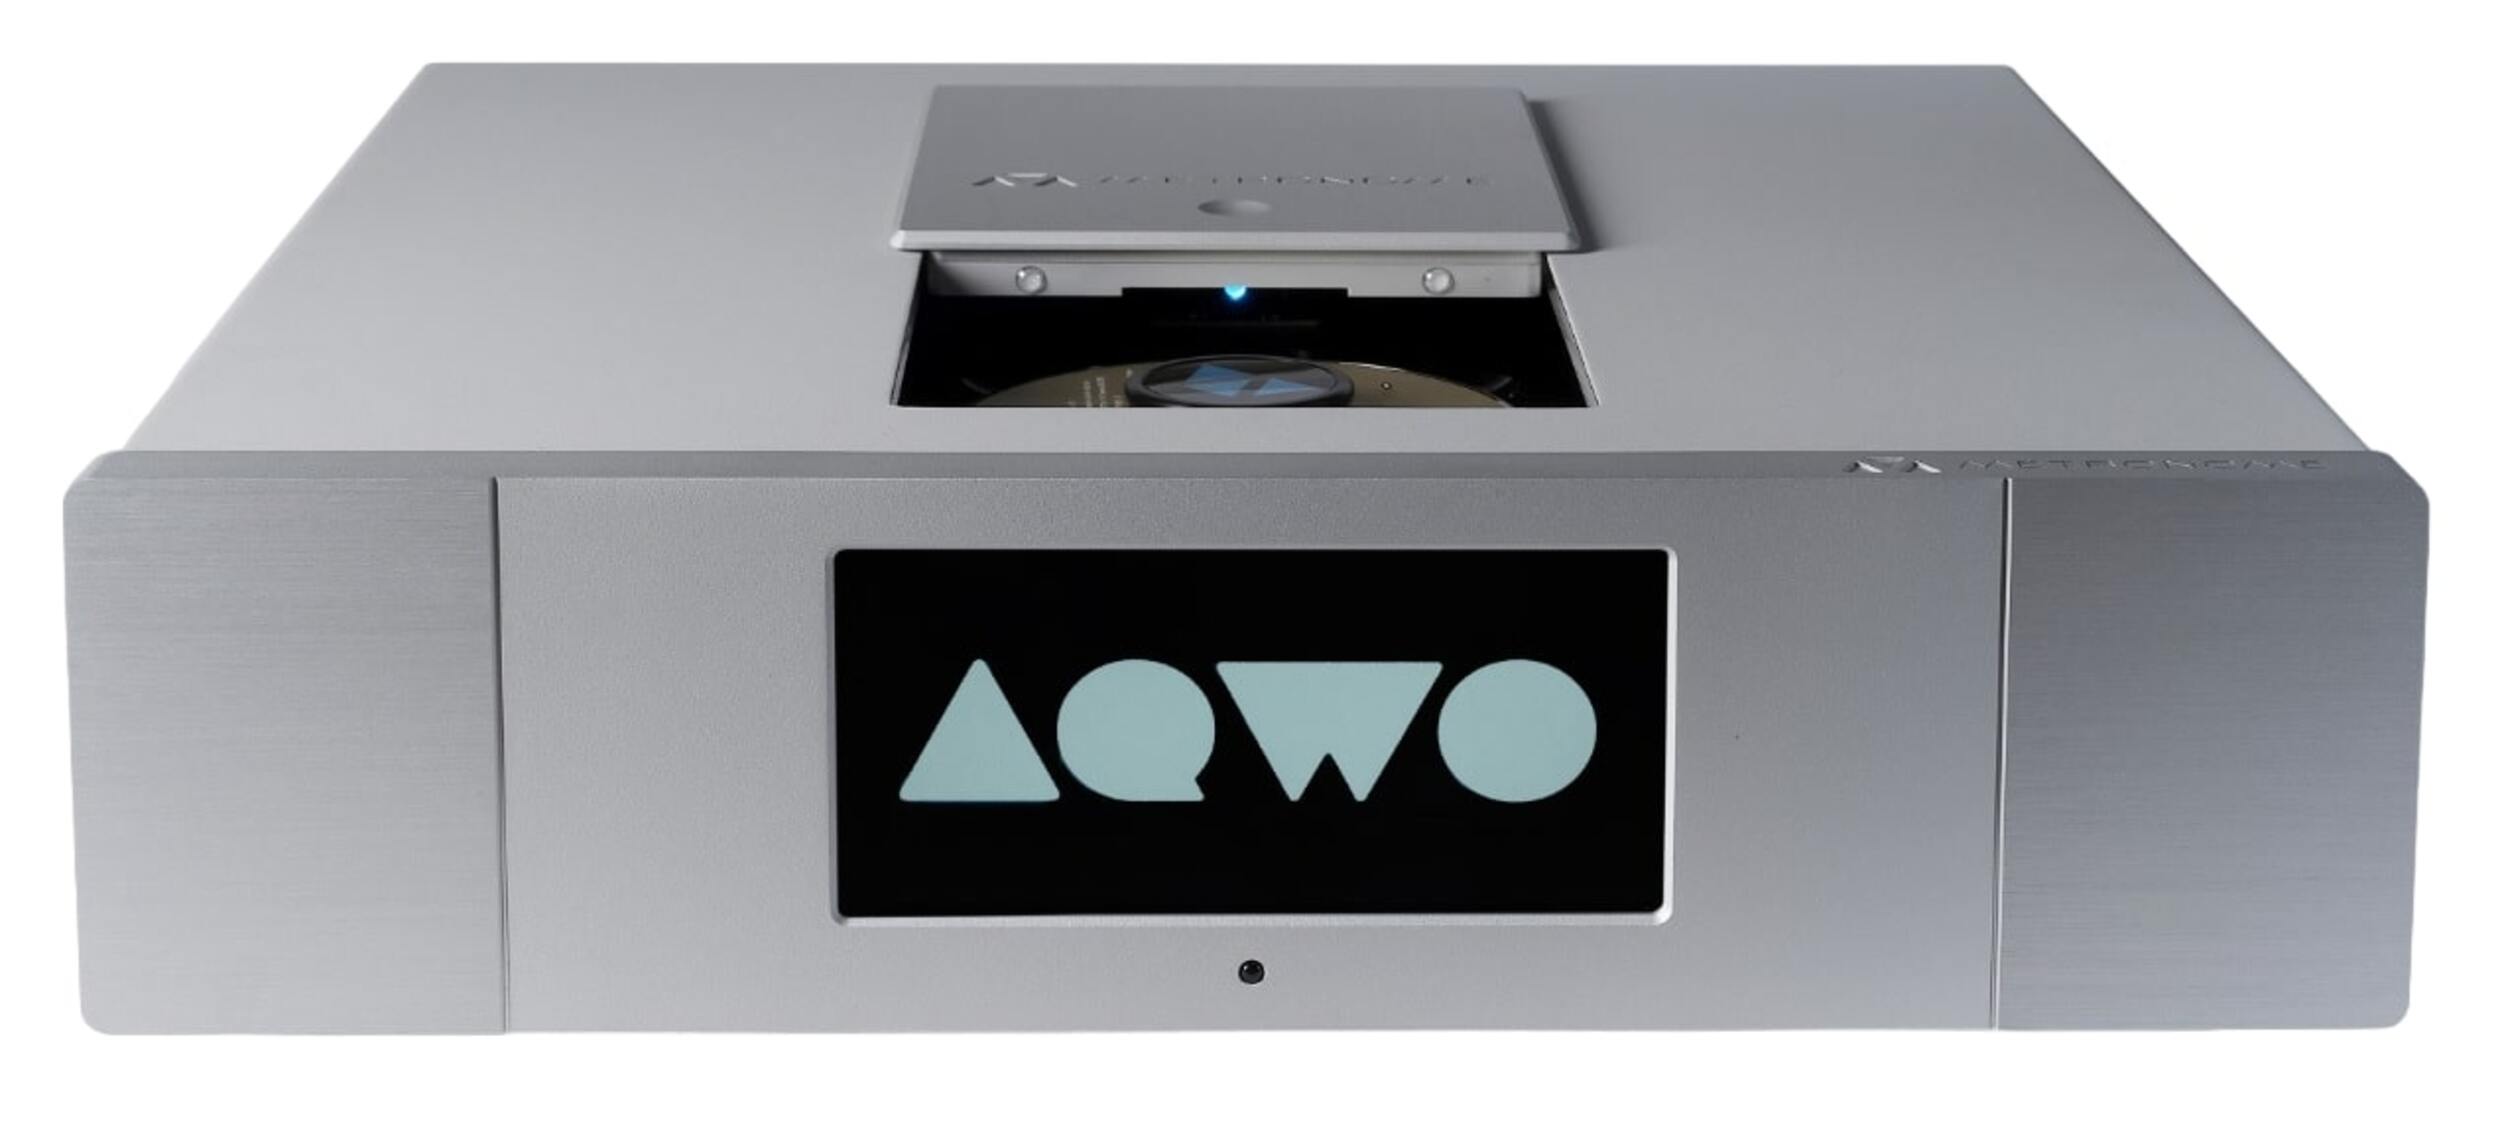 CD проигрыватели Metronome AQWO 2 Silver marin tonos humanos 1 sacd